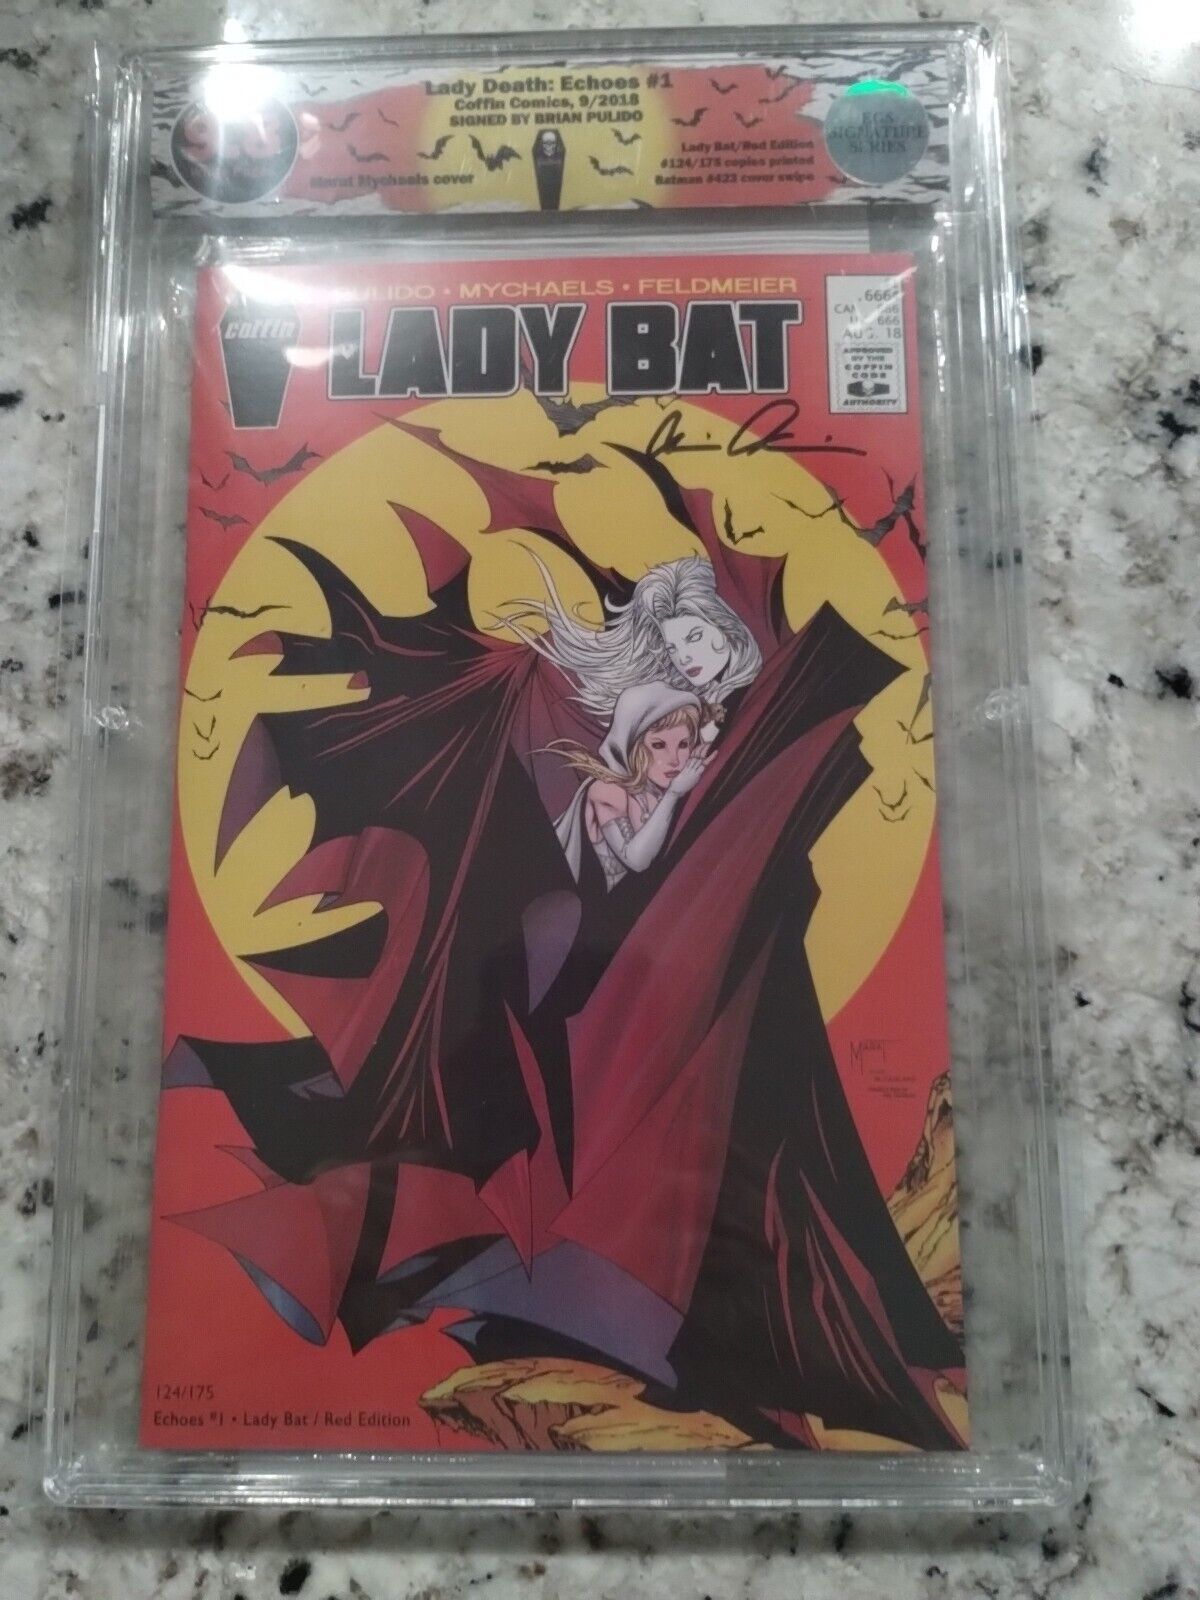 Lady Death: Echoes #1 Lady Bat Edition Signed BRIAN PULIDO EGS SS 9.8 BATMAN 423